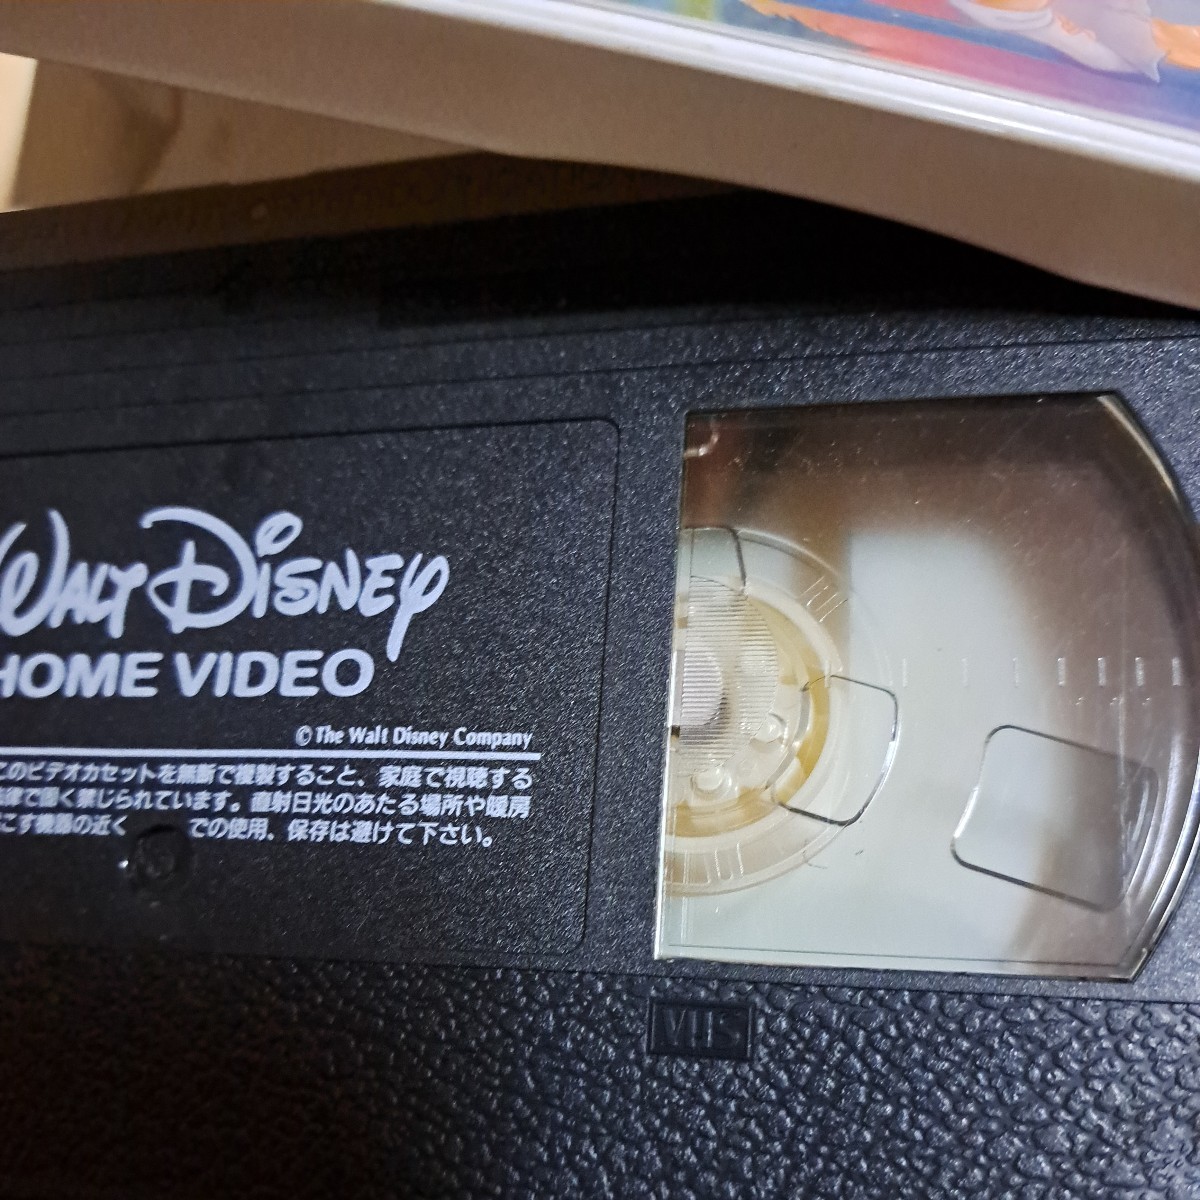  Дисней 　 мультипликация 　...　 японский язык ... издание 　VHS  видео   лента  　